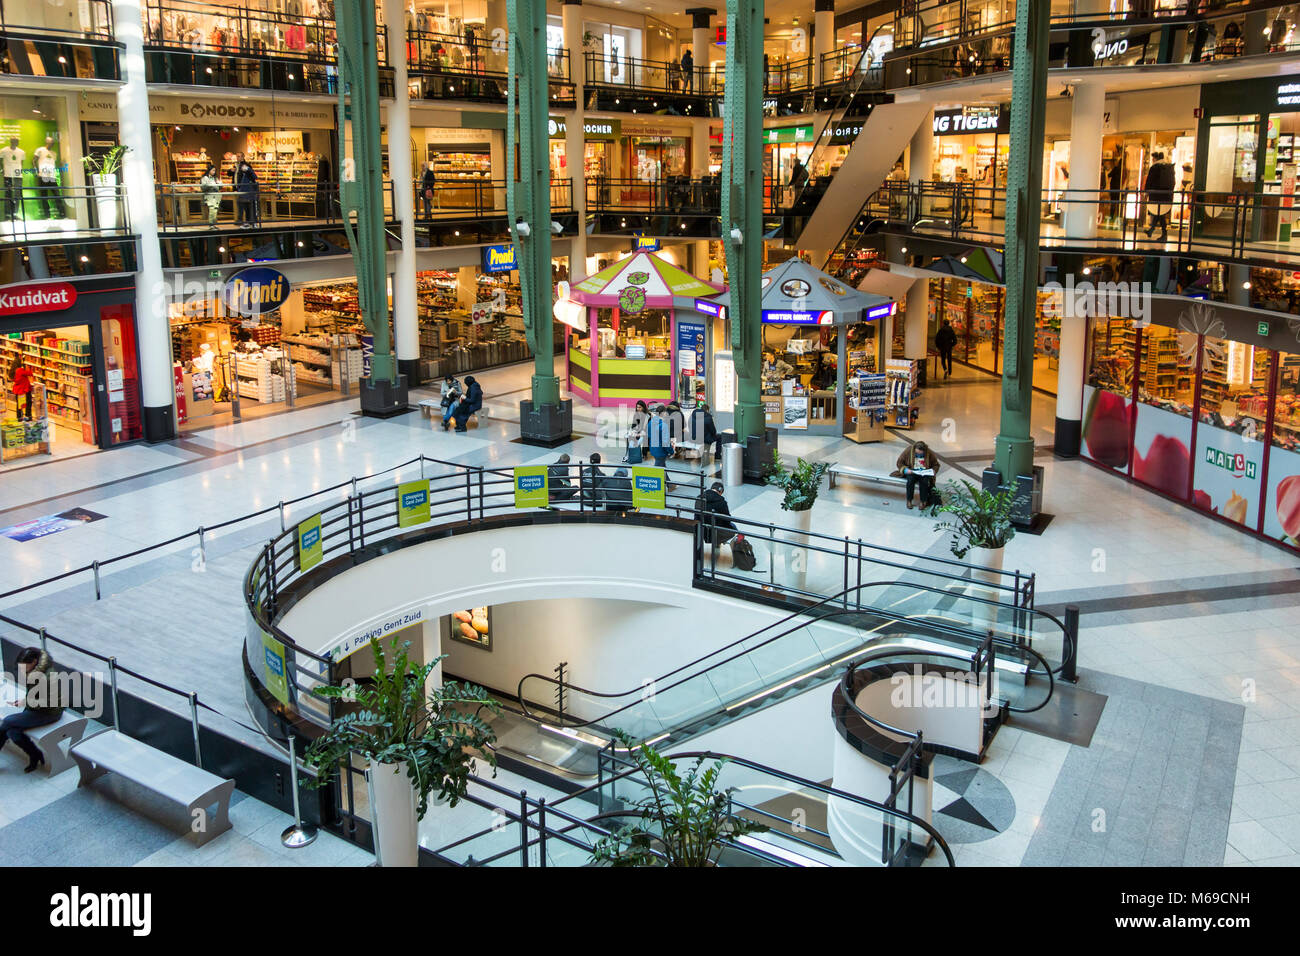 City2 shopping mall dans le centre ville de Bruxelles